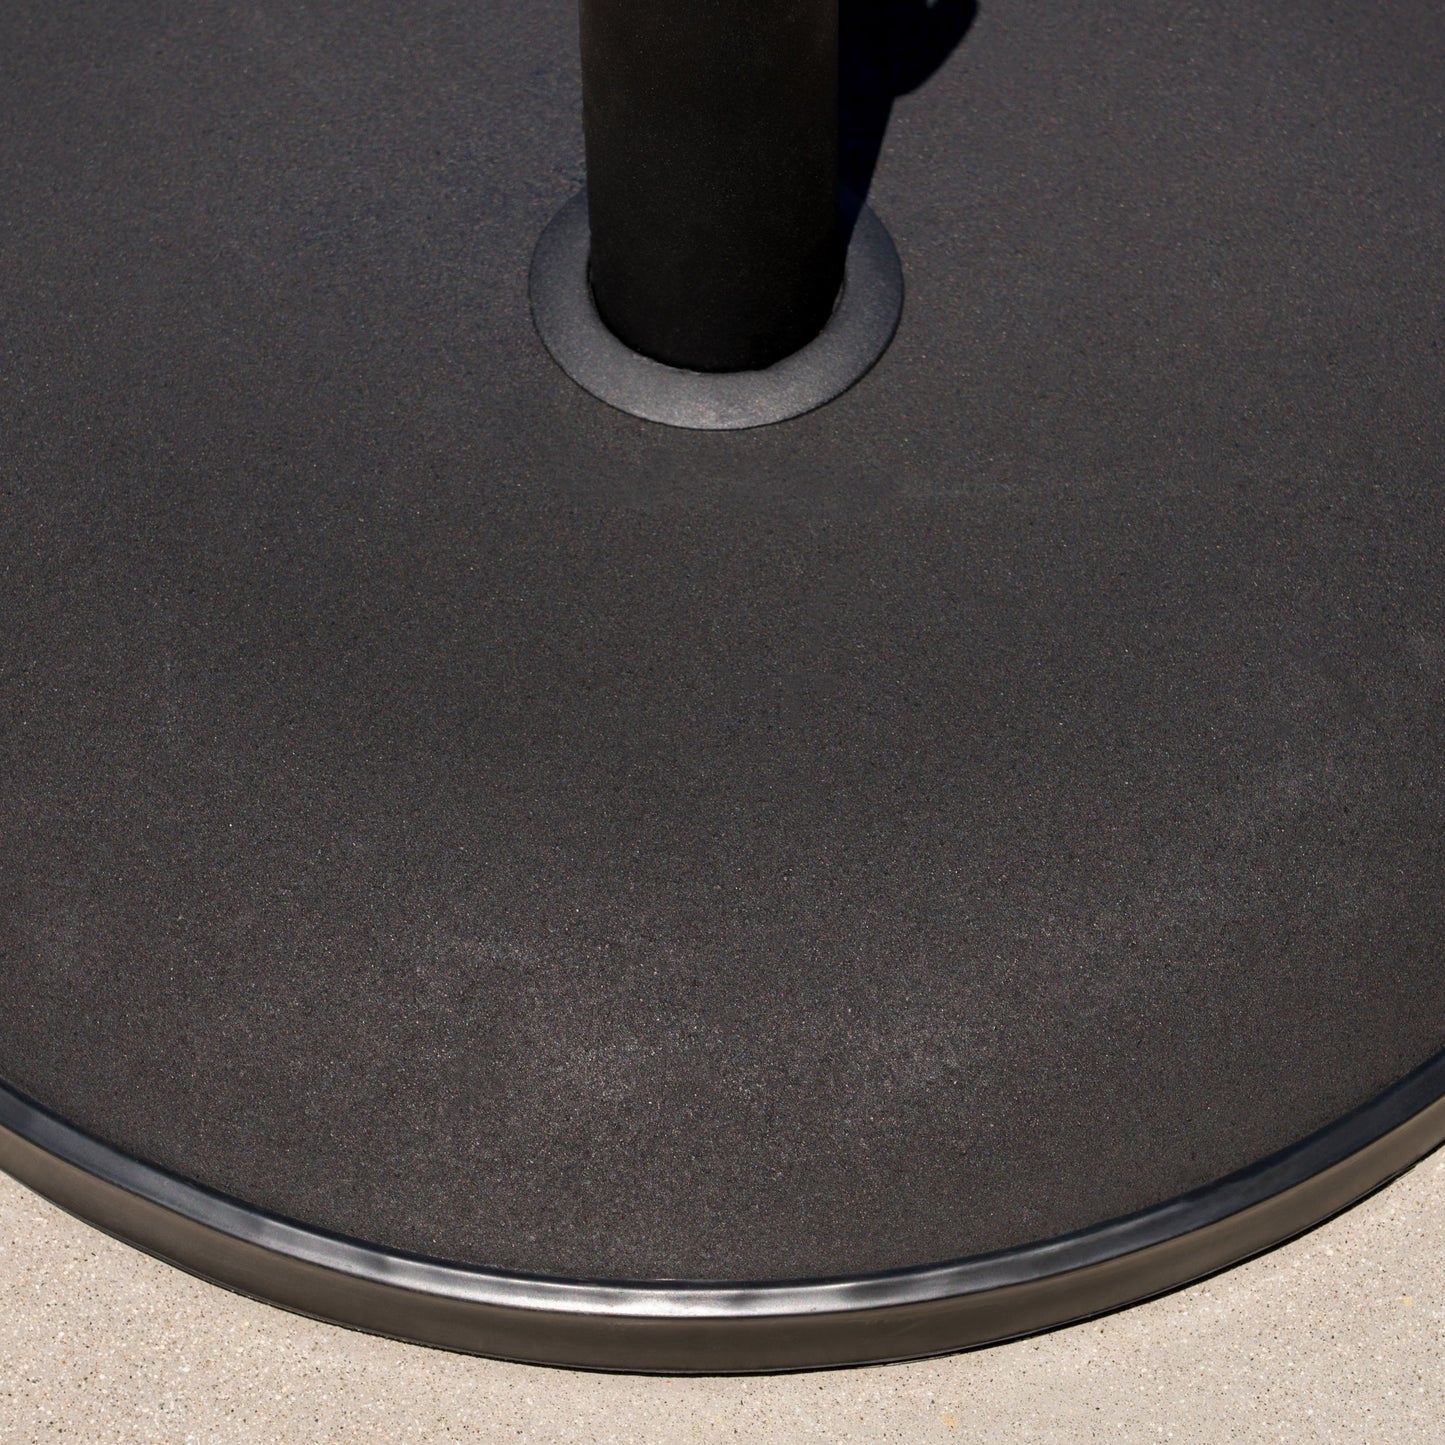 Gretna Outdoor 55 lbs Circular Concrete Umbrella Base